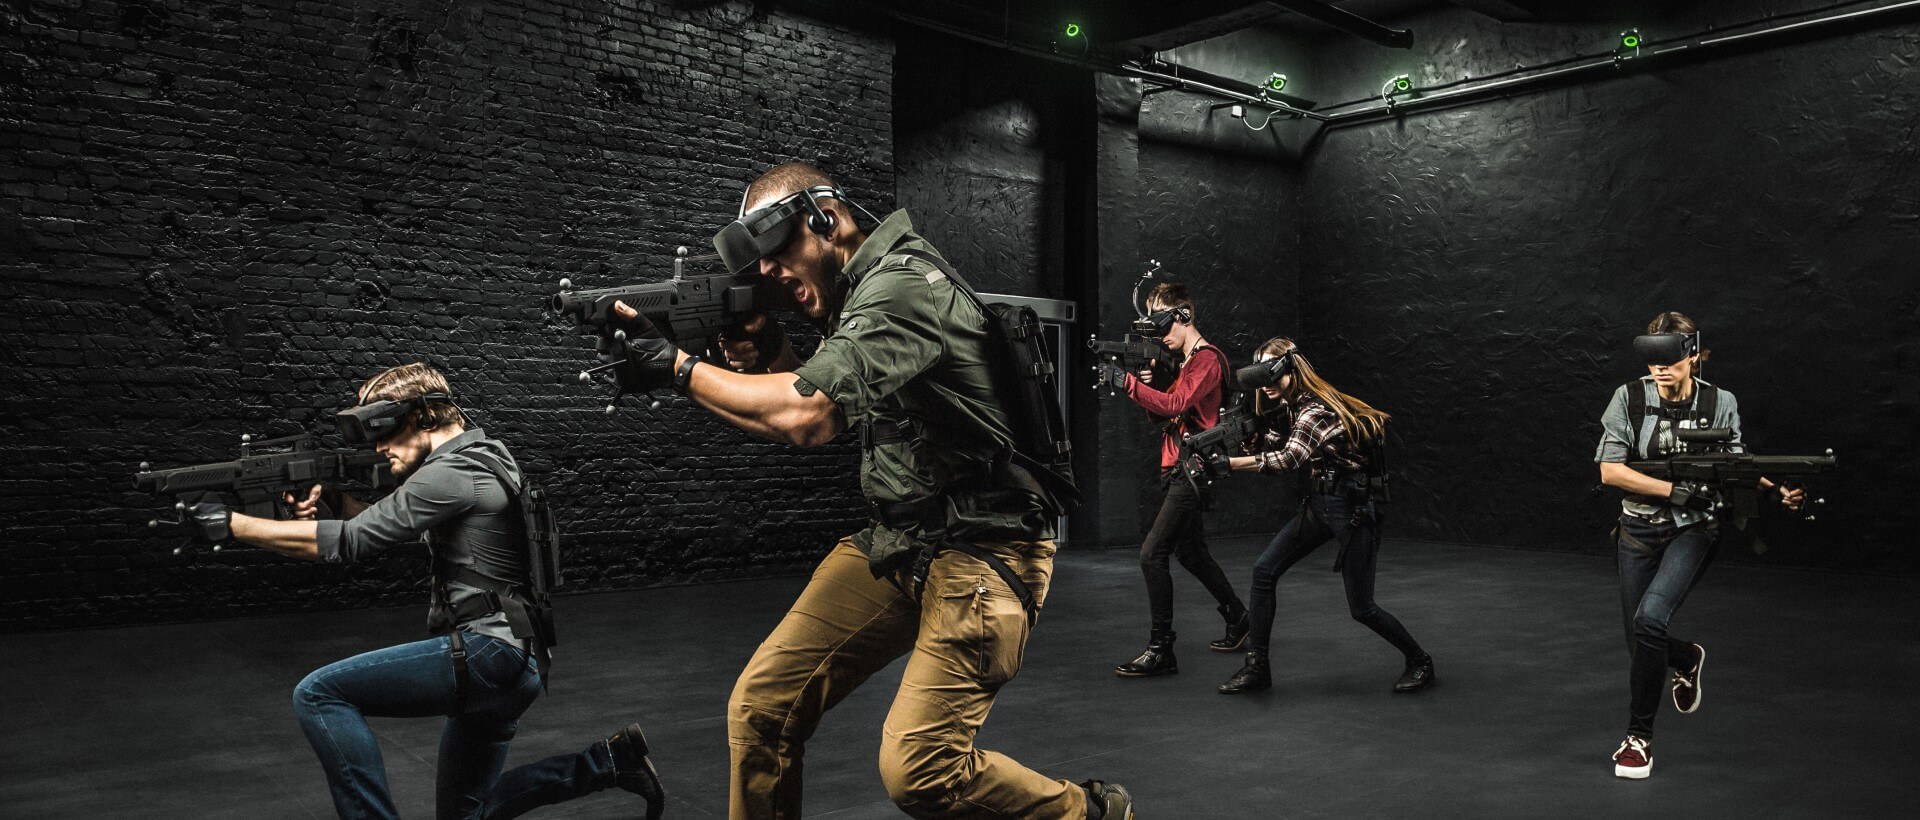 Квест виртуальной реальности для пятерых, Киев - Фото